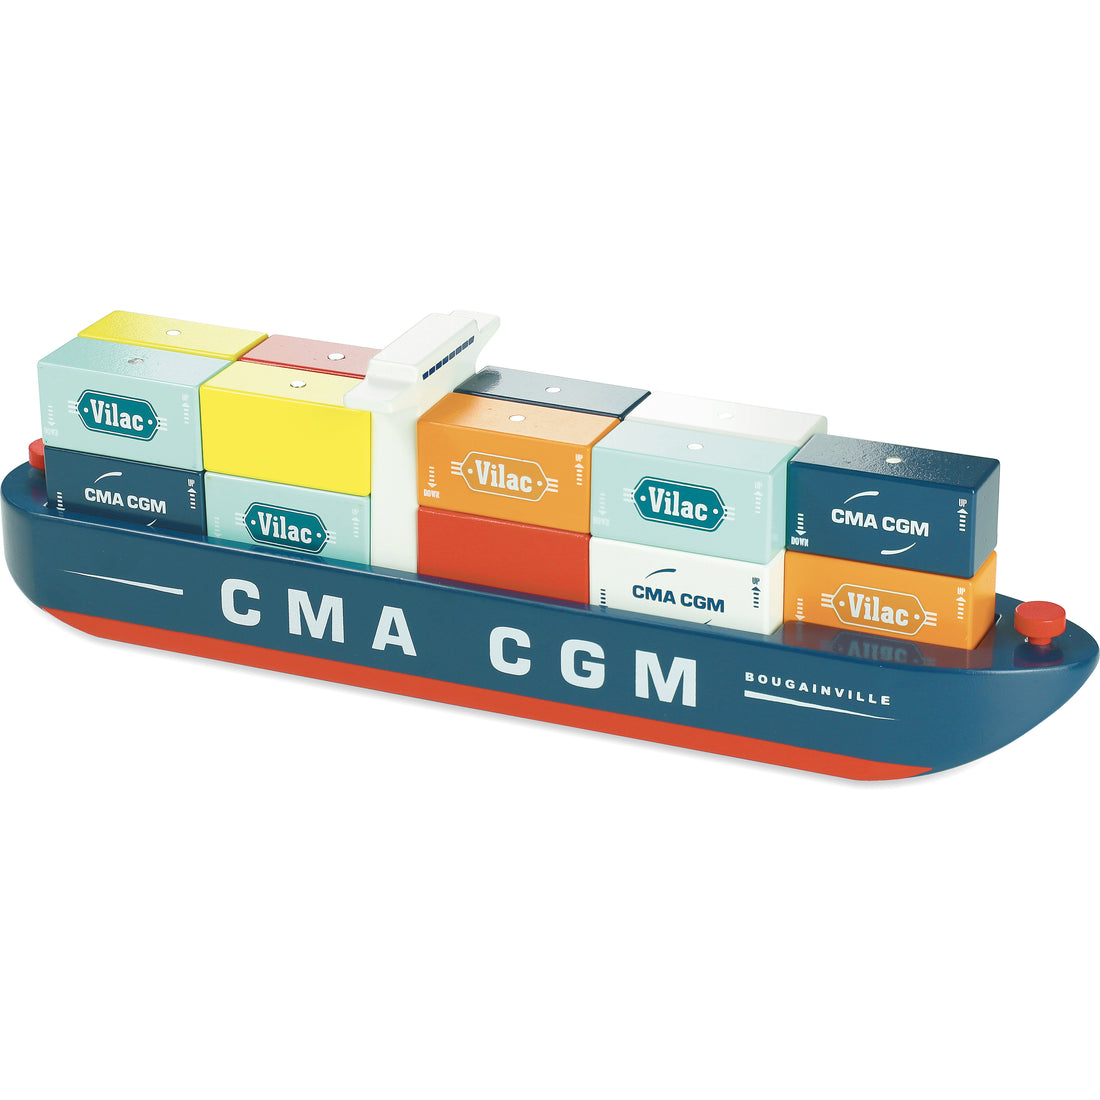 Vilacity Container Ship - Parkette.